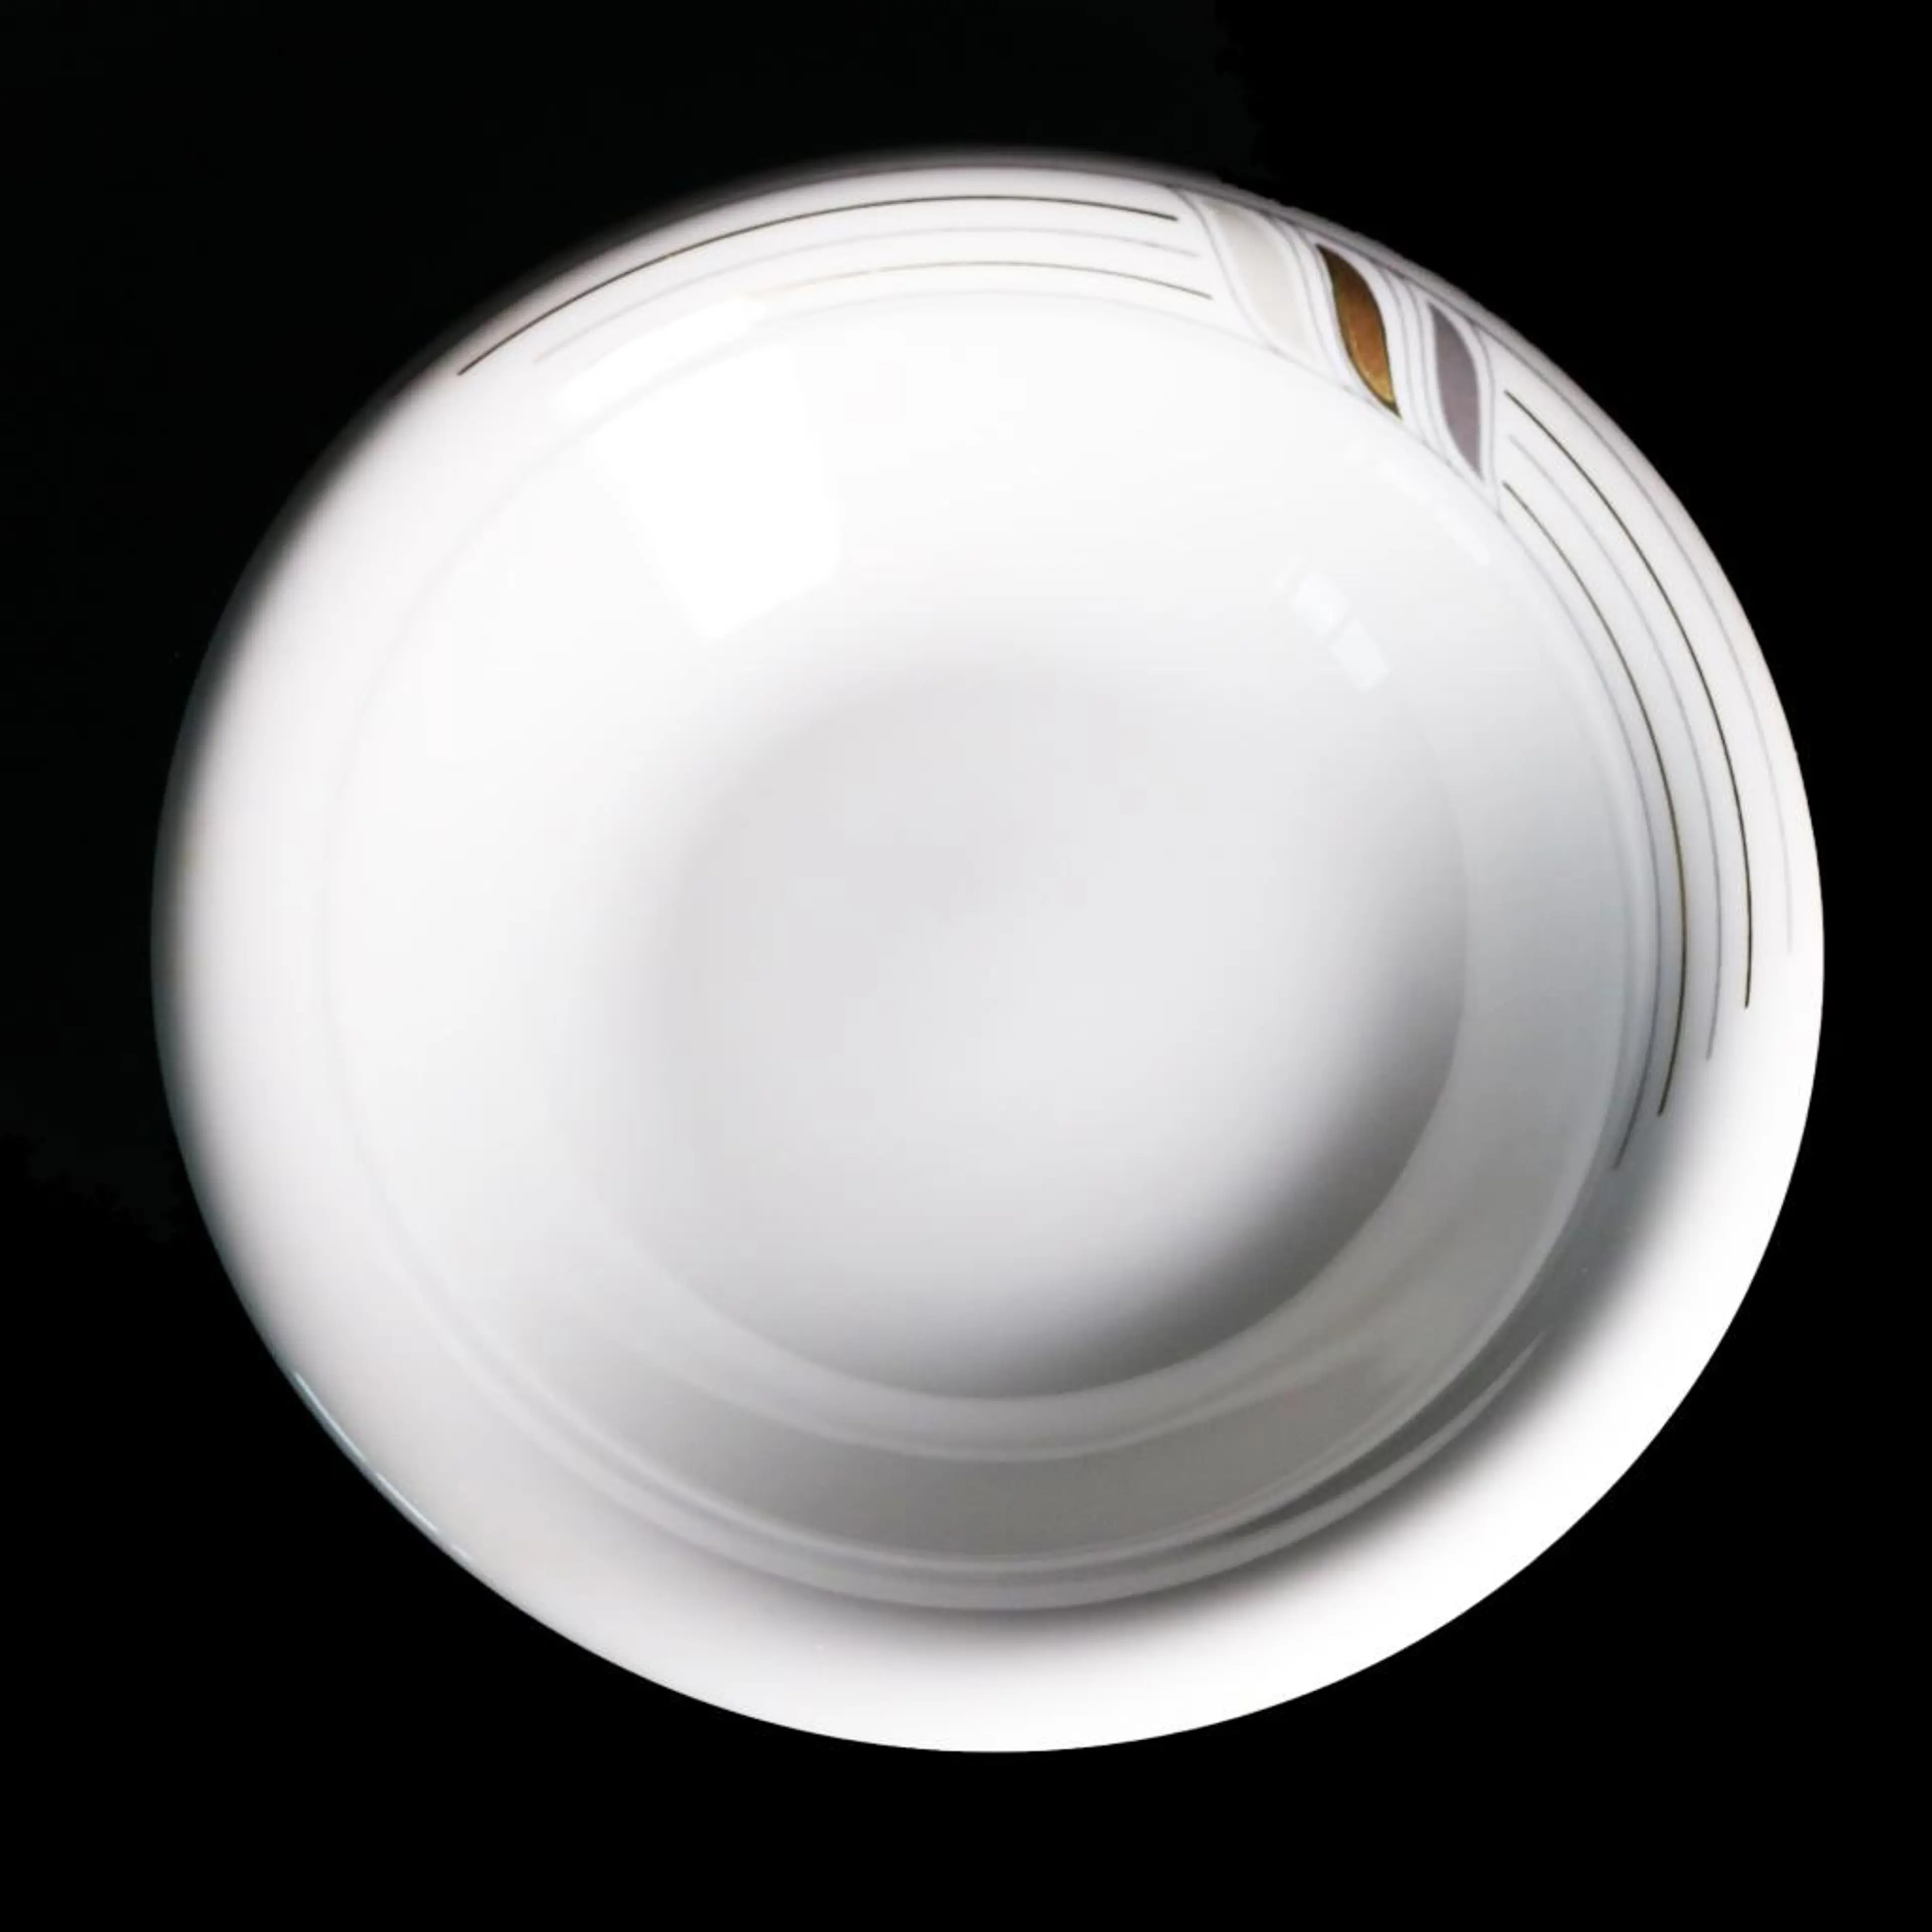 Seitmann Weiden Porcelain Plate, Gold Line